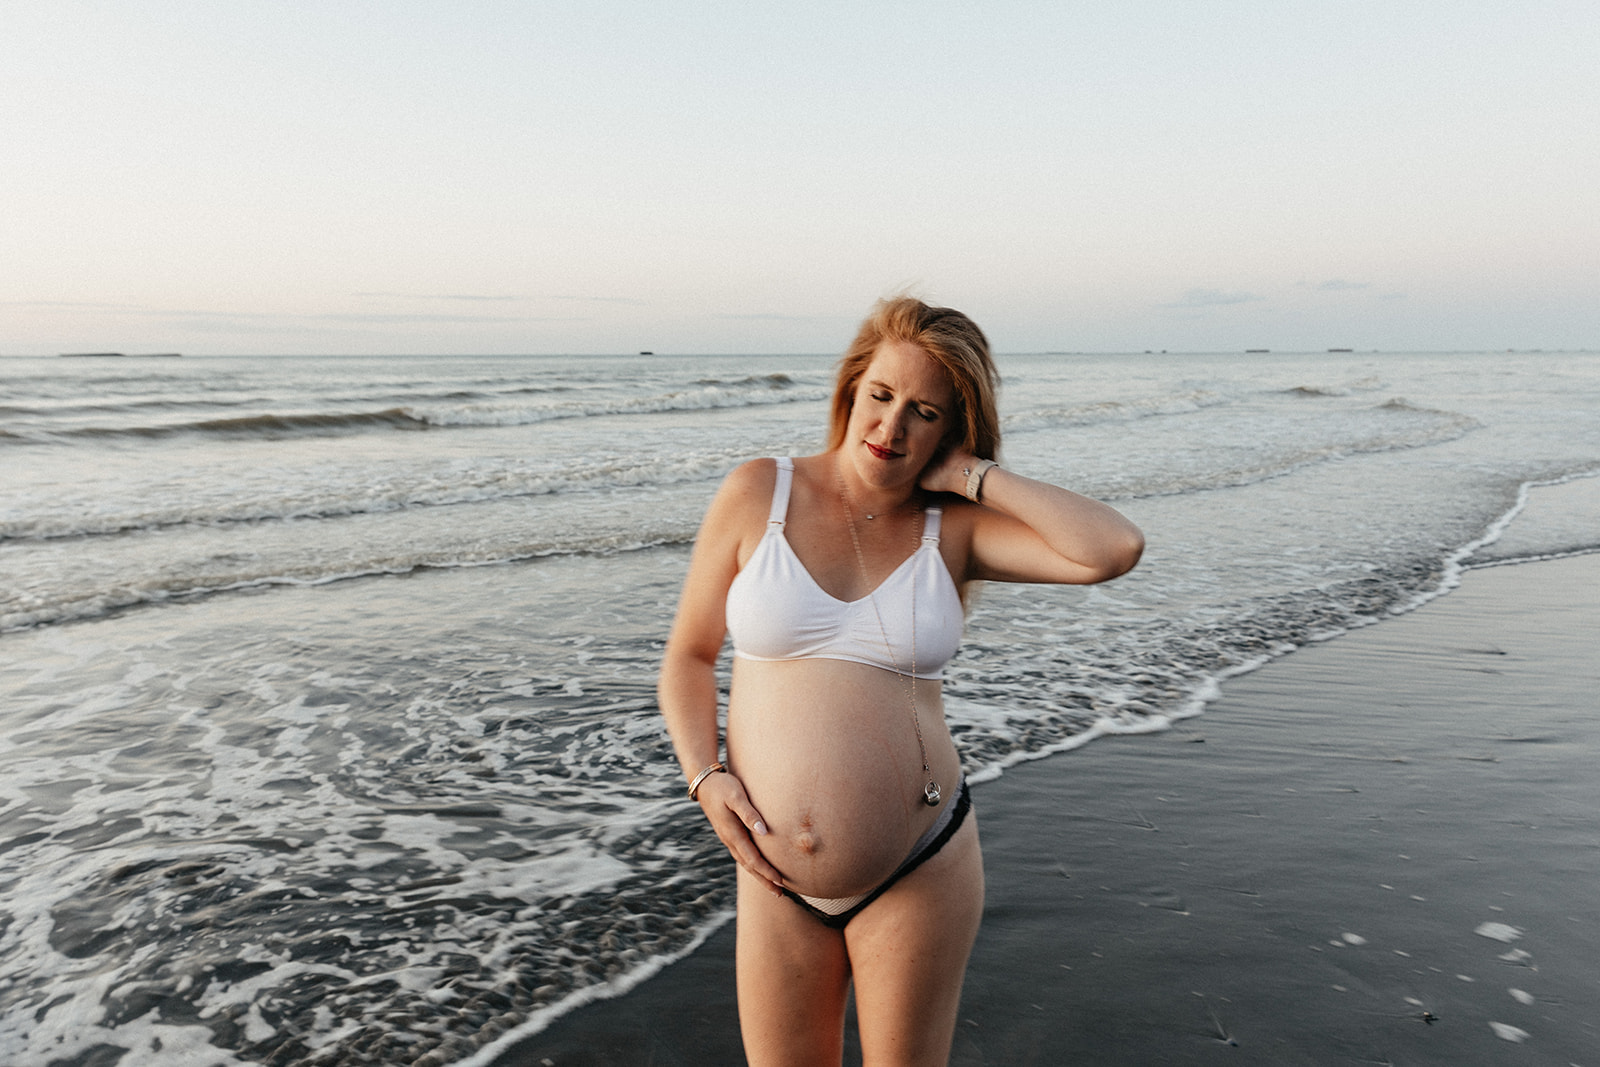 Une famille se fait photographier sur les plages normandes pour célébrer la grossesse de maman. 